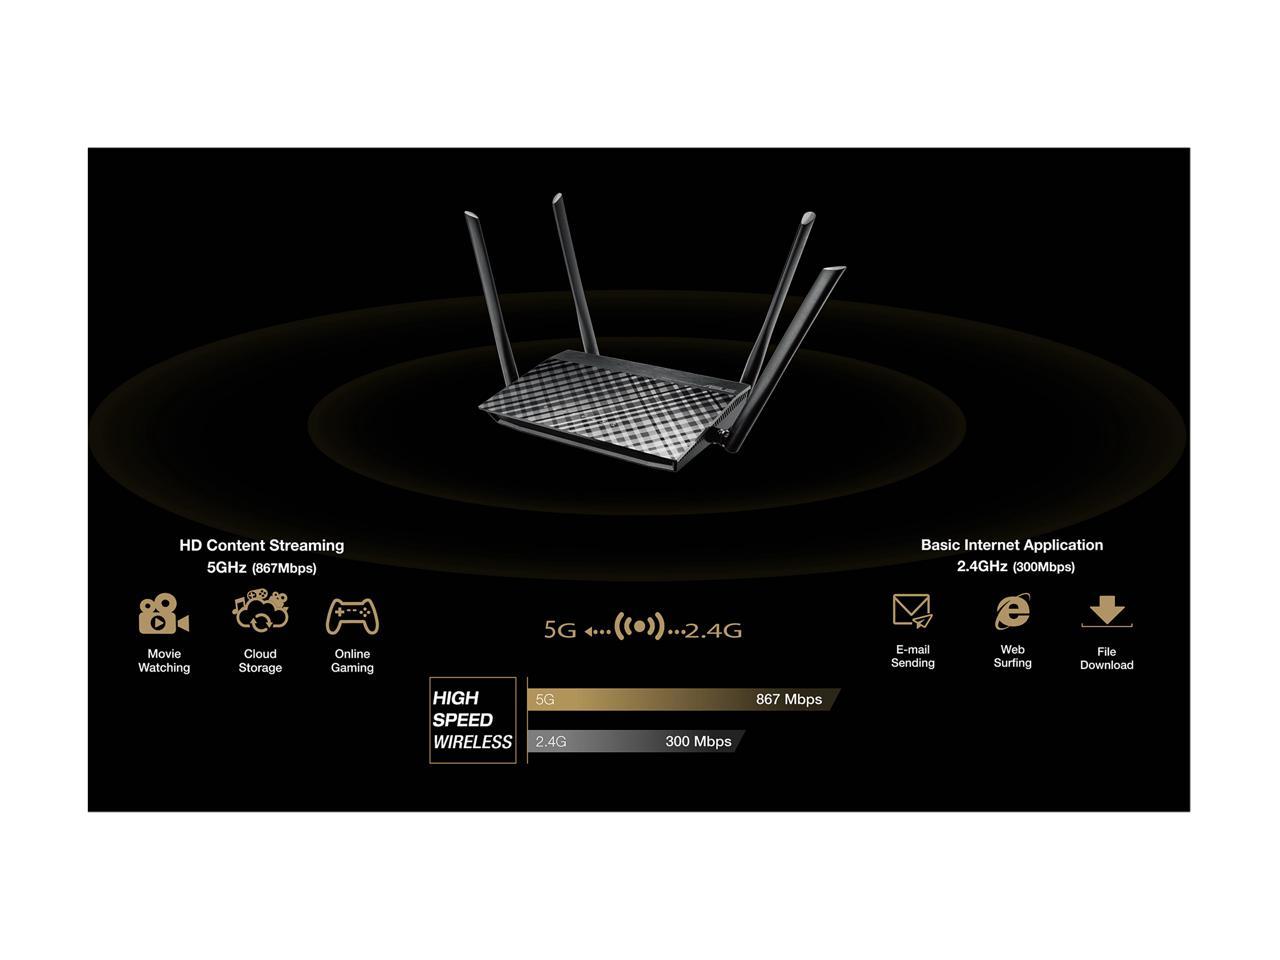 ASUS RT-AC1200GE AC1200 Dual Band WiFi Router, Parental Control, MU-MIMO, 4 x Gigabit LAN ports, VPN, Gaming & 4K Streaming